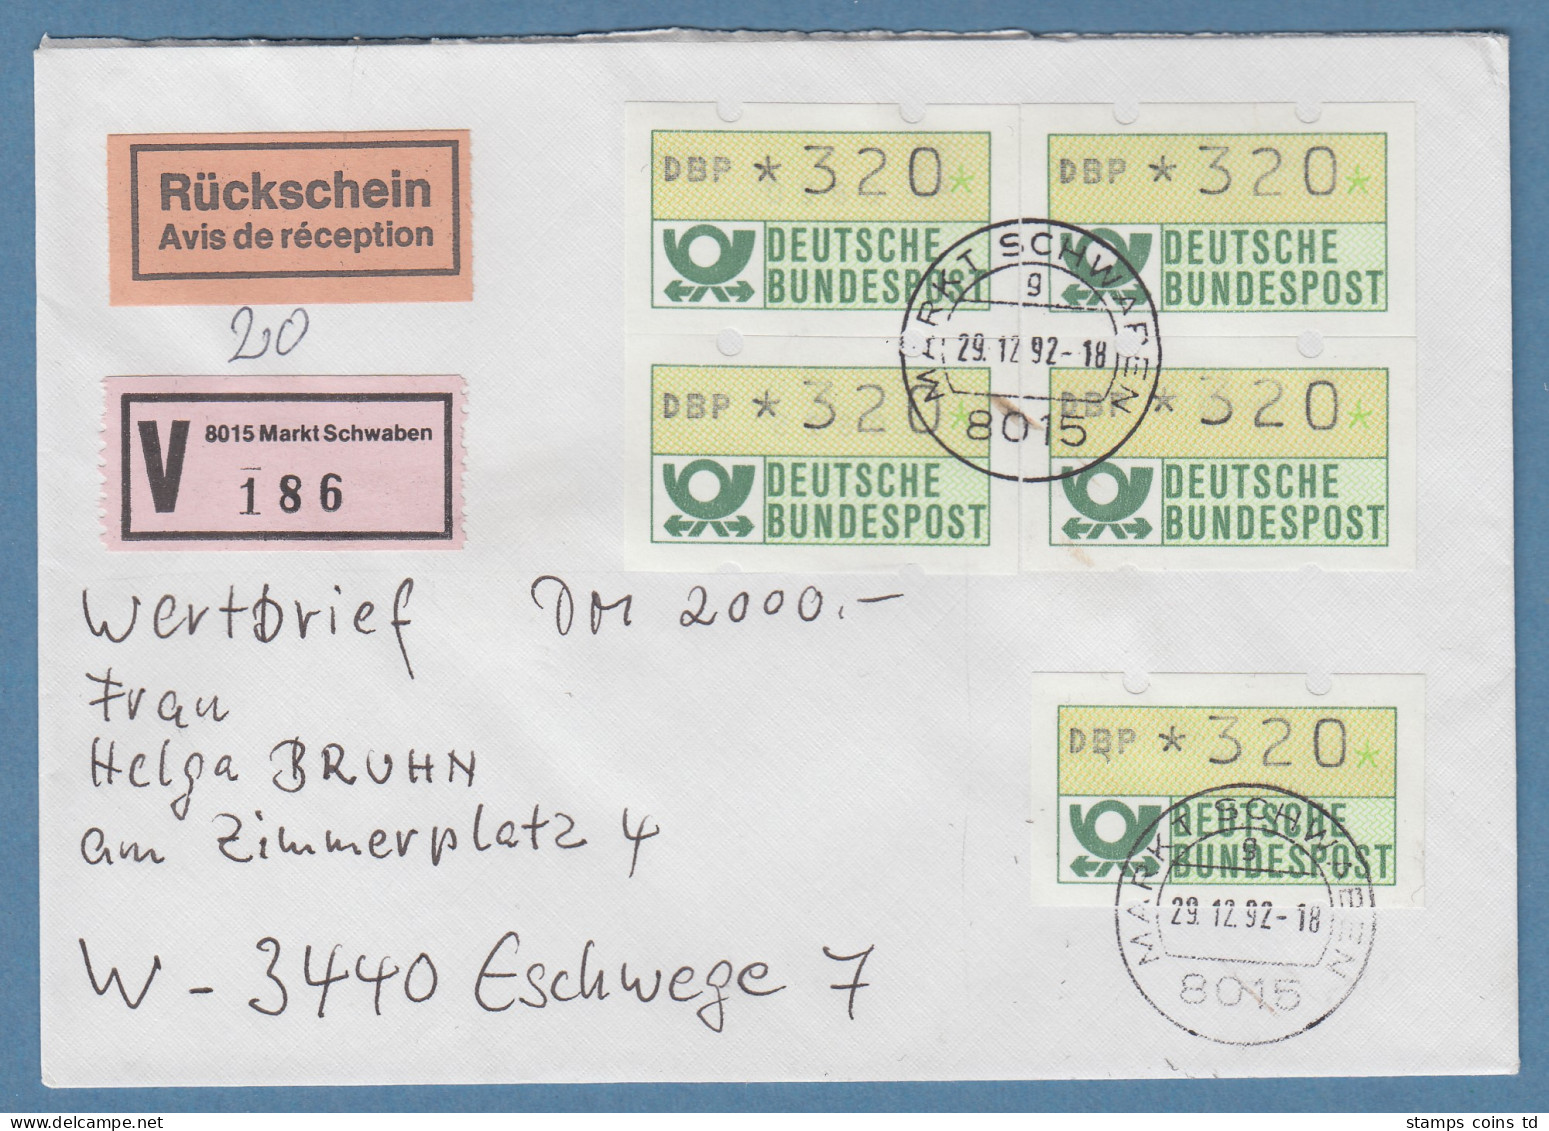 NAGLER-ATM Mi-Nr 1.2 Wert 320 5x Als MEF Auf Rsch-Wertbrief 2000,-DM , 29.12.92  - Vignette [ATM]